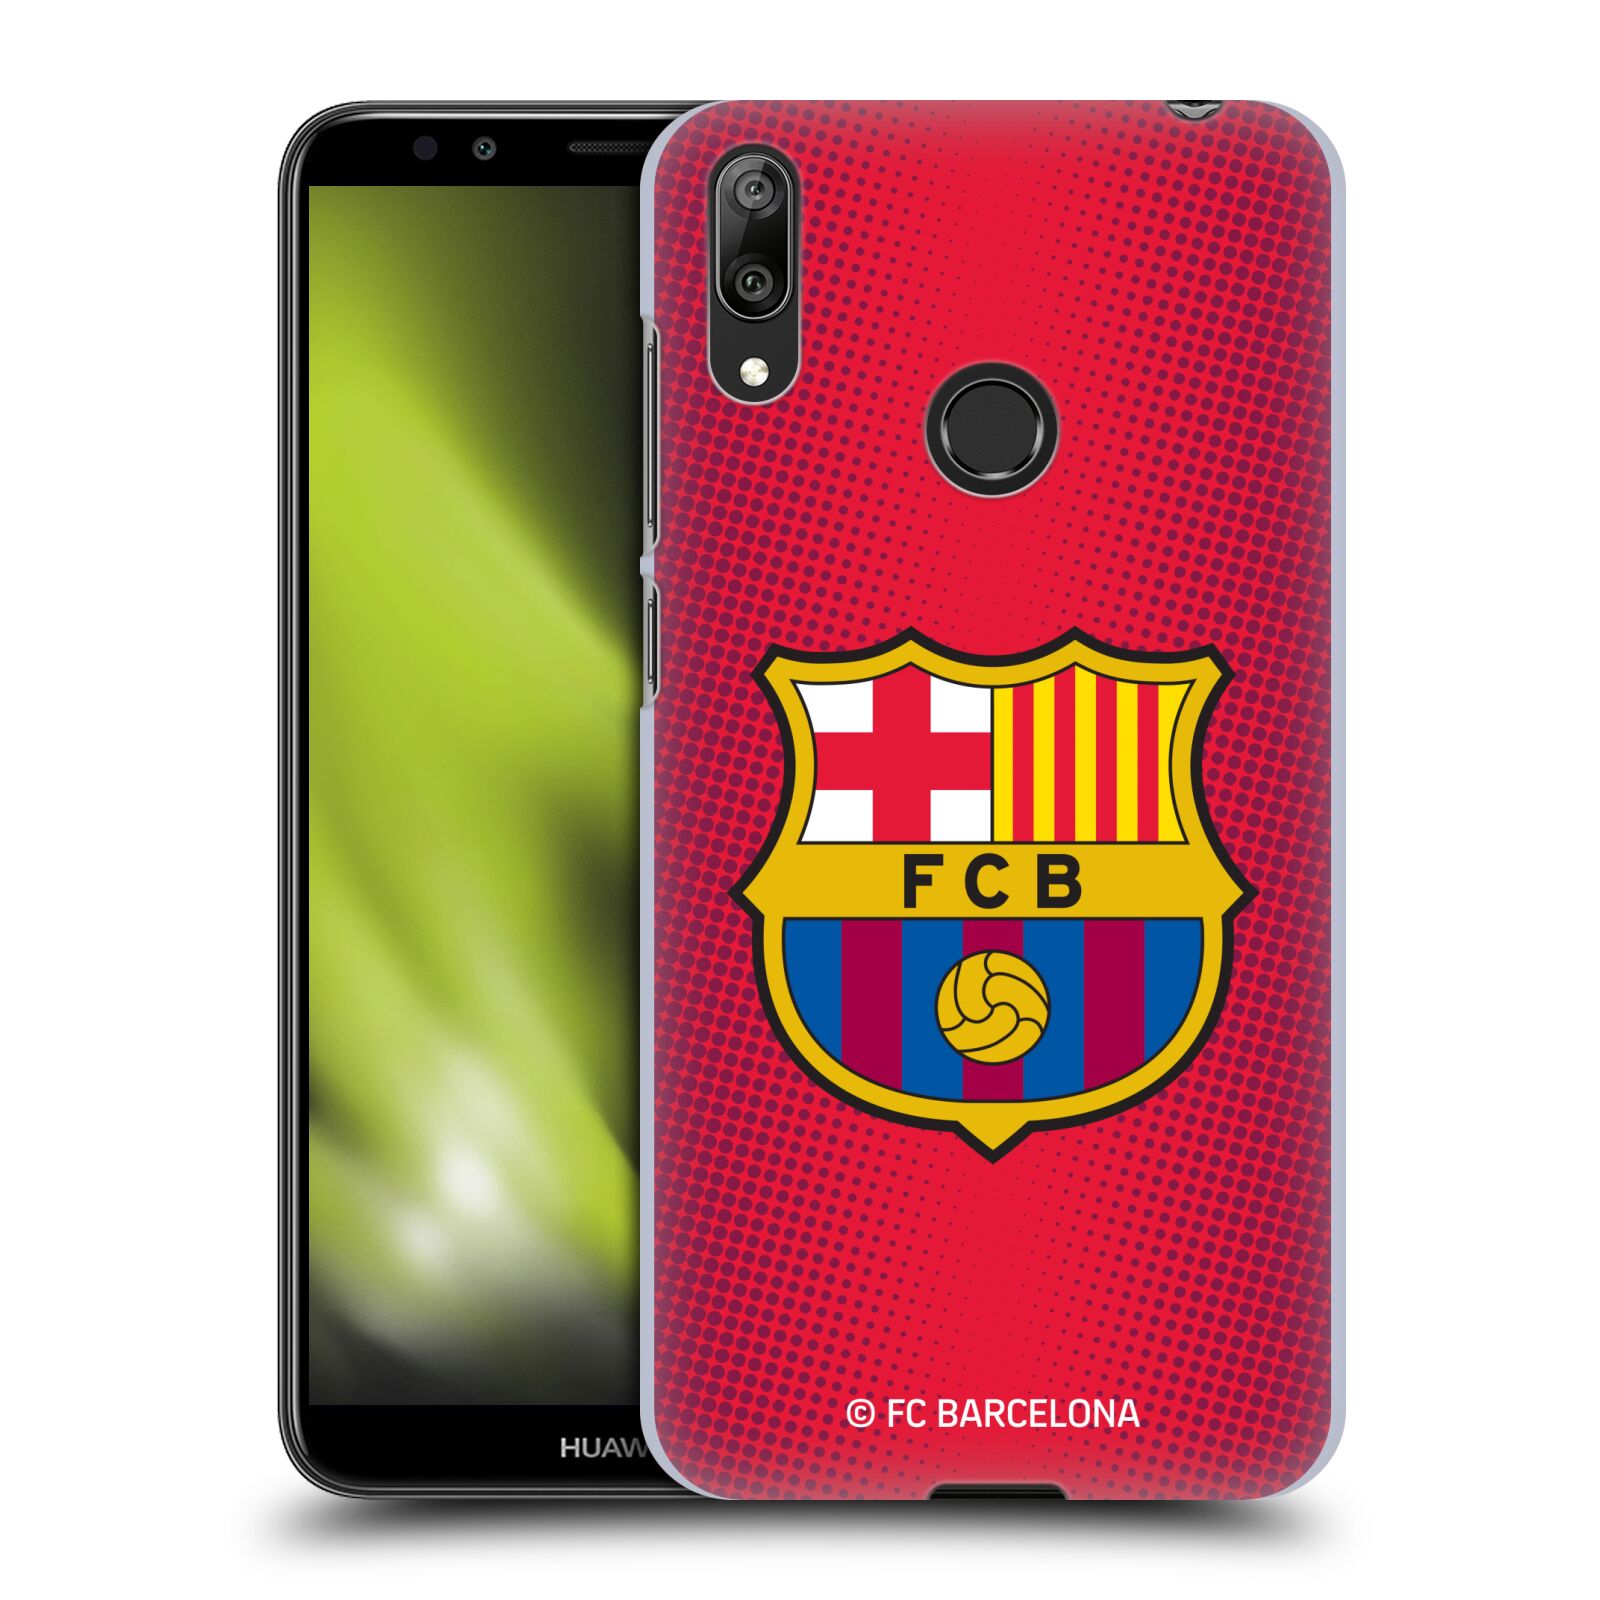 Obal na mobil Huawei Y7 2019 - HEAD CASE - FC BARCELONA - Velký znak červená a modrá